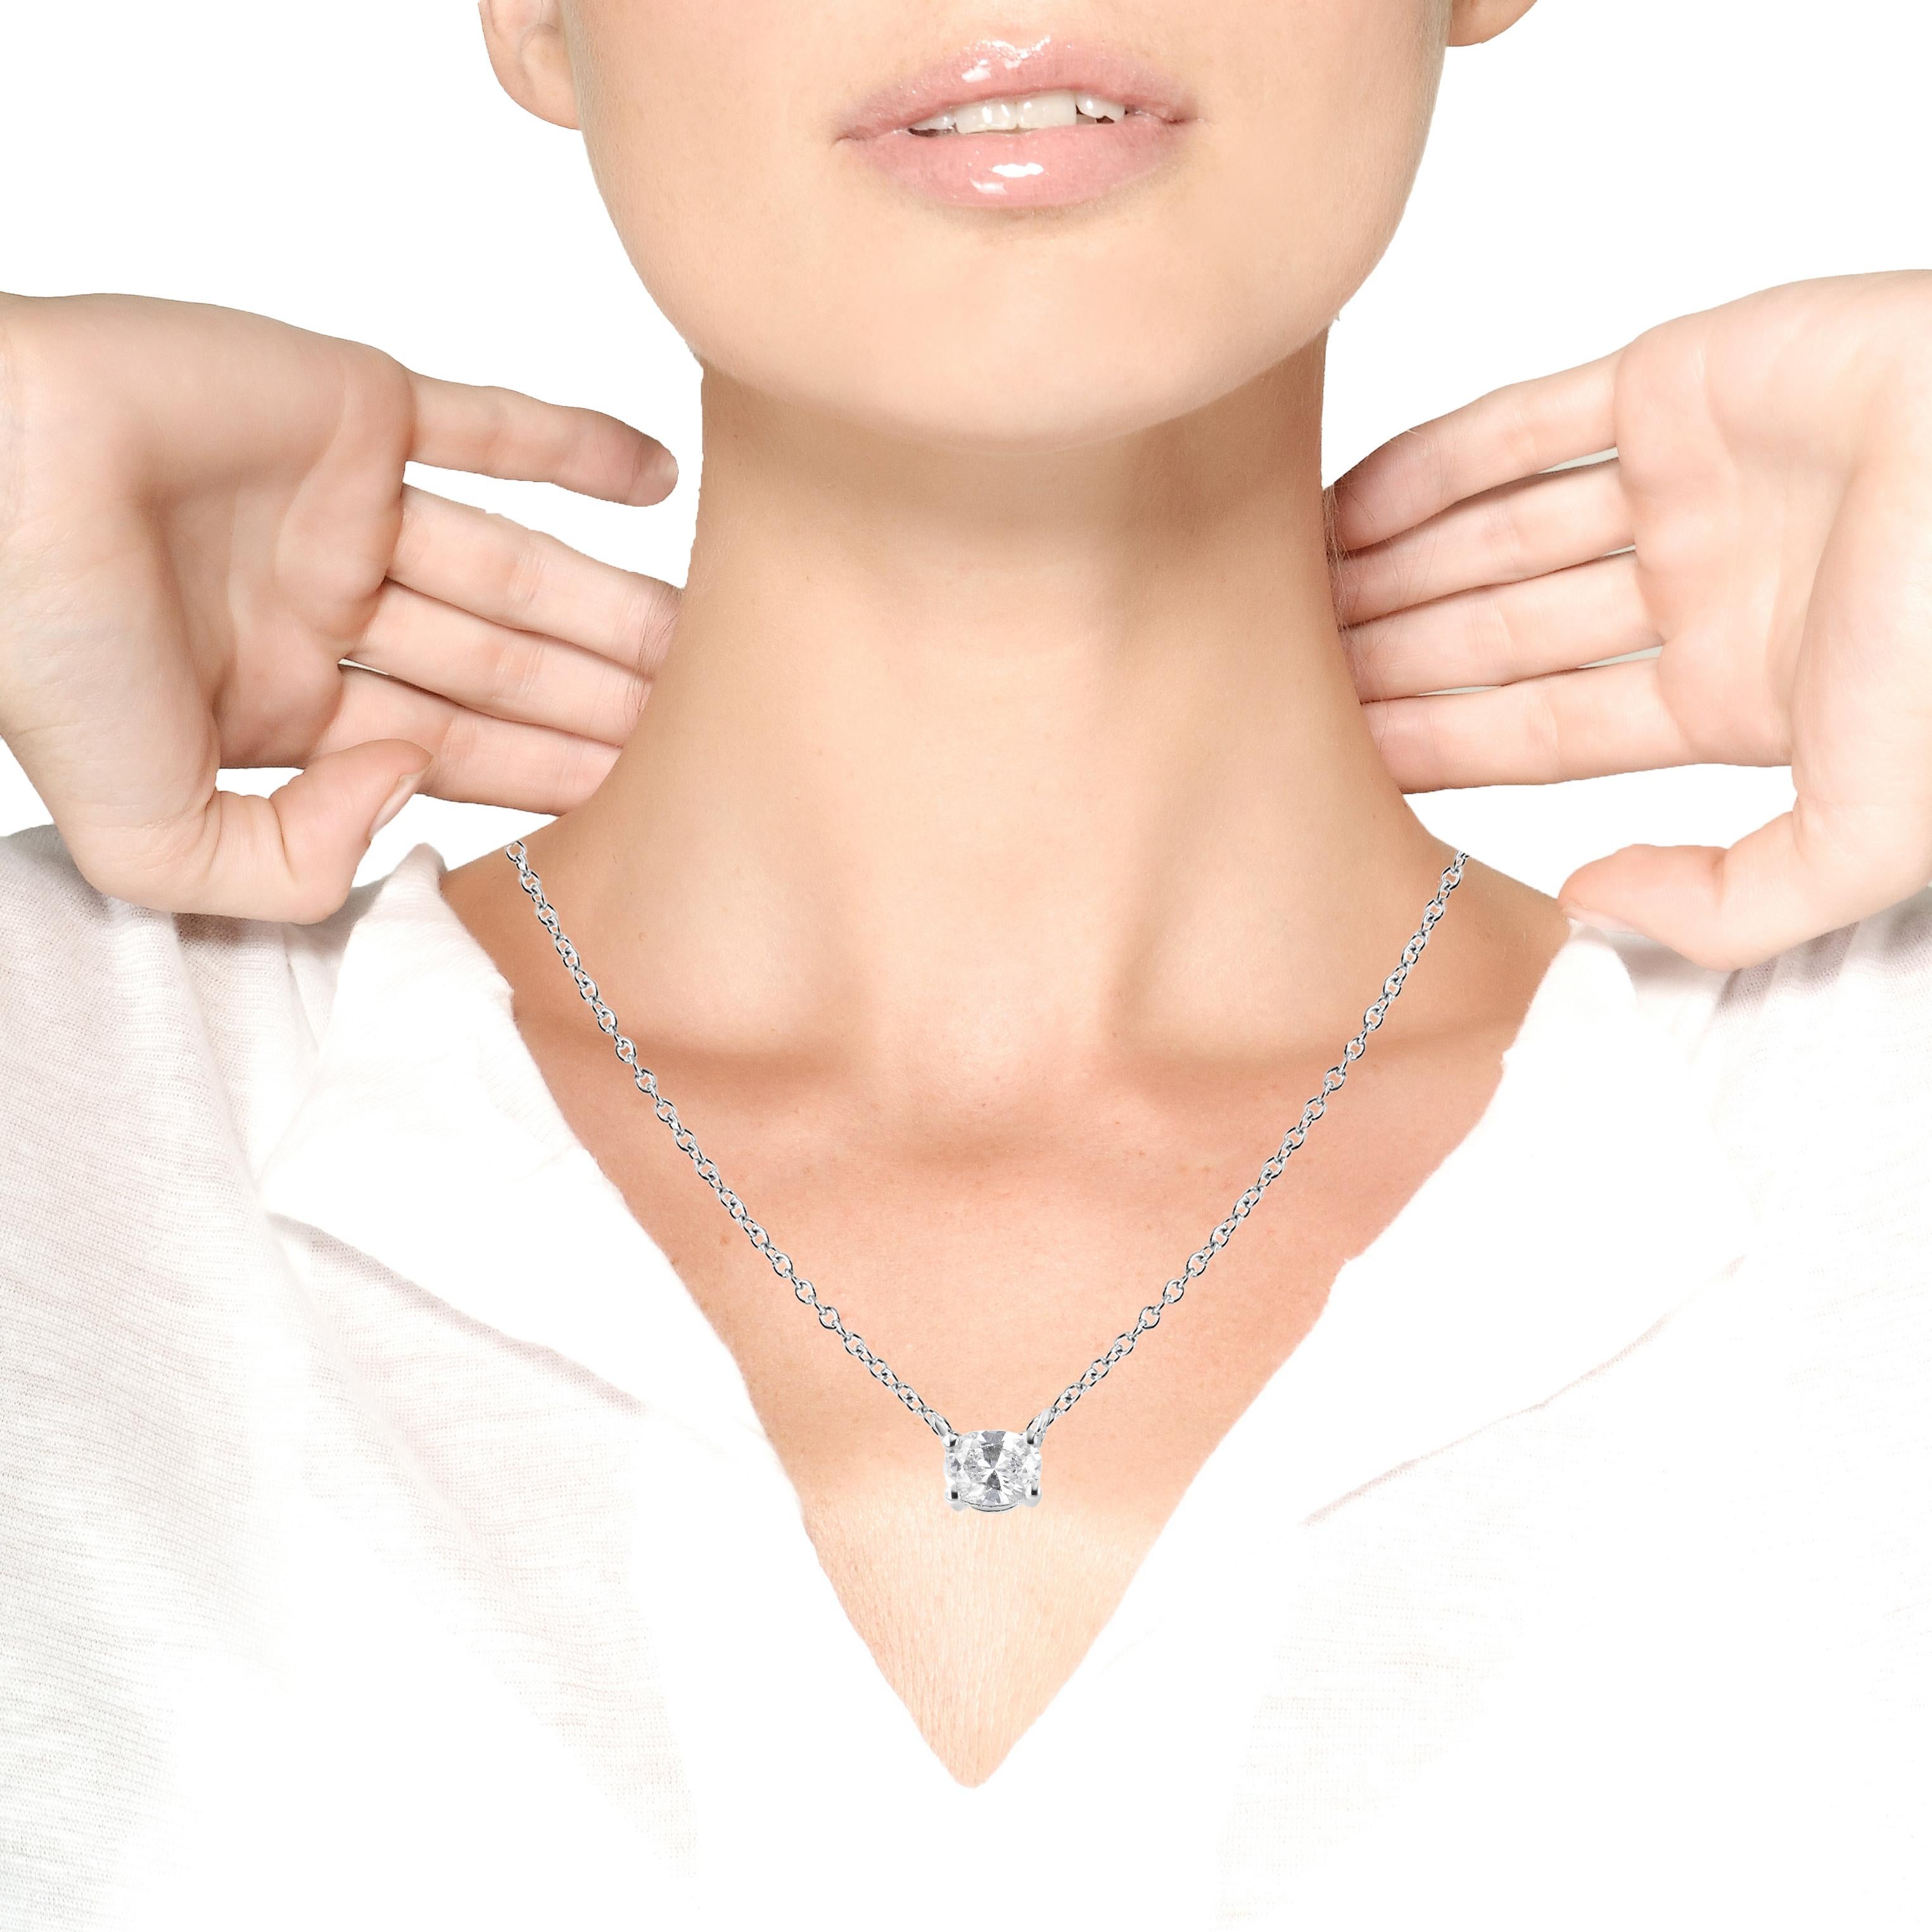 stationary diamond necklace